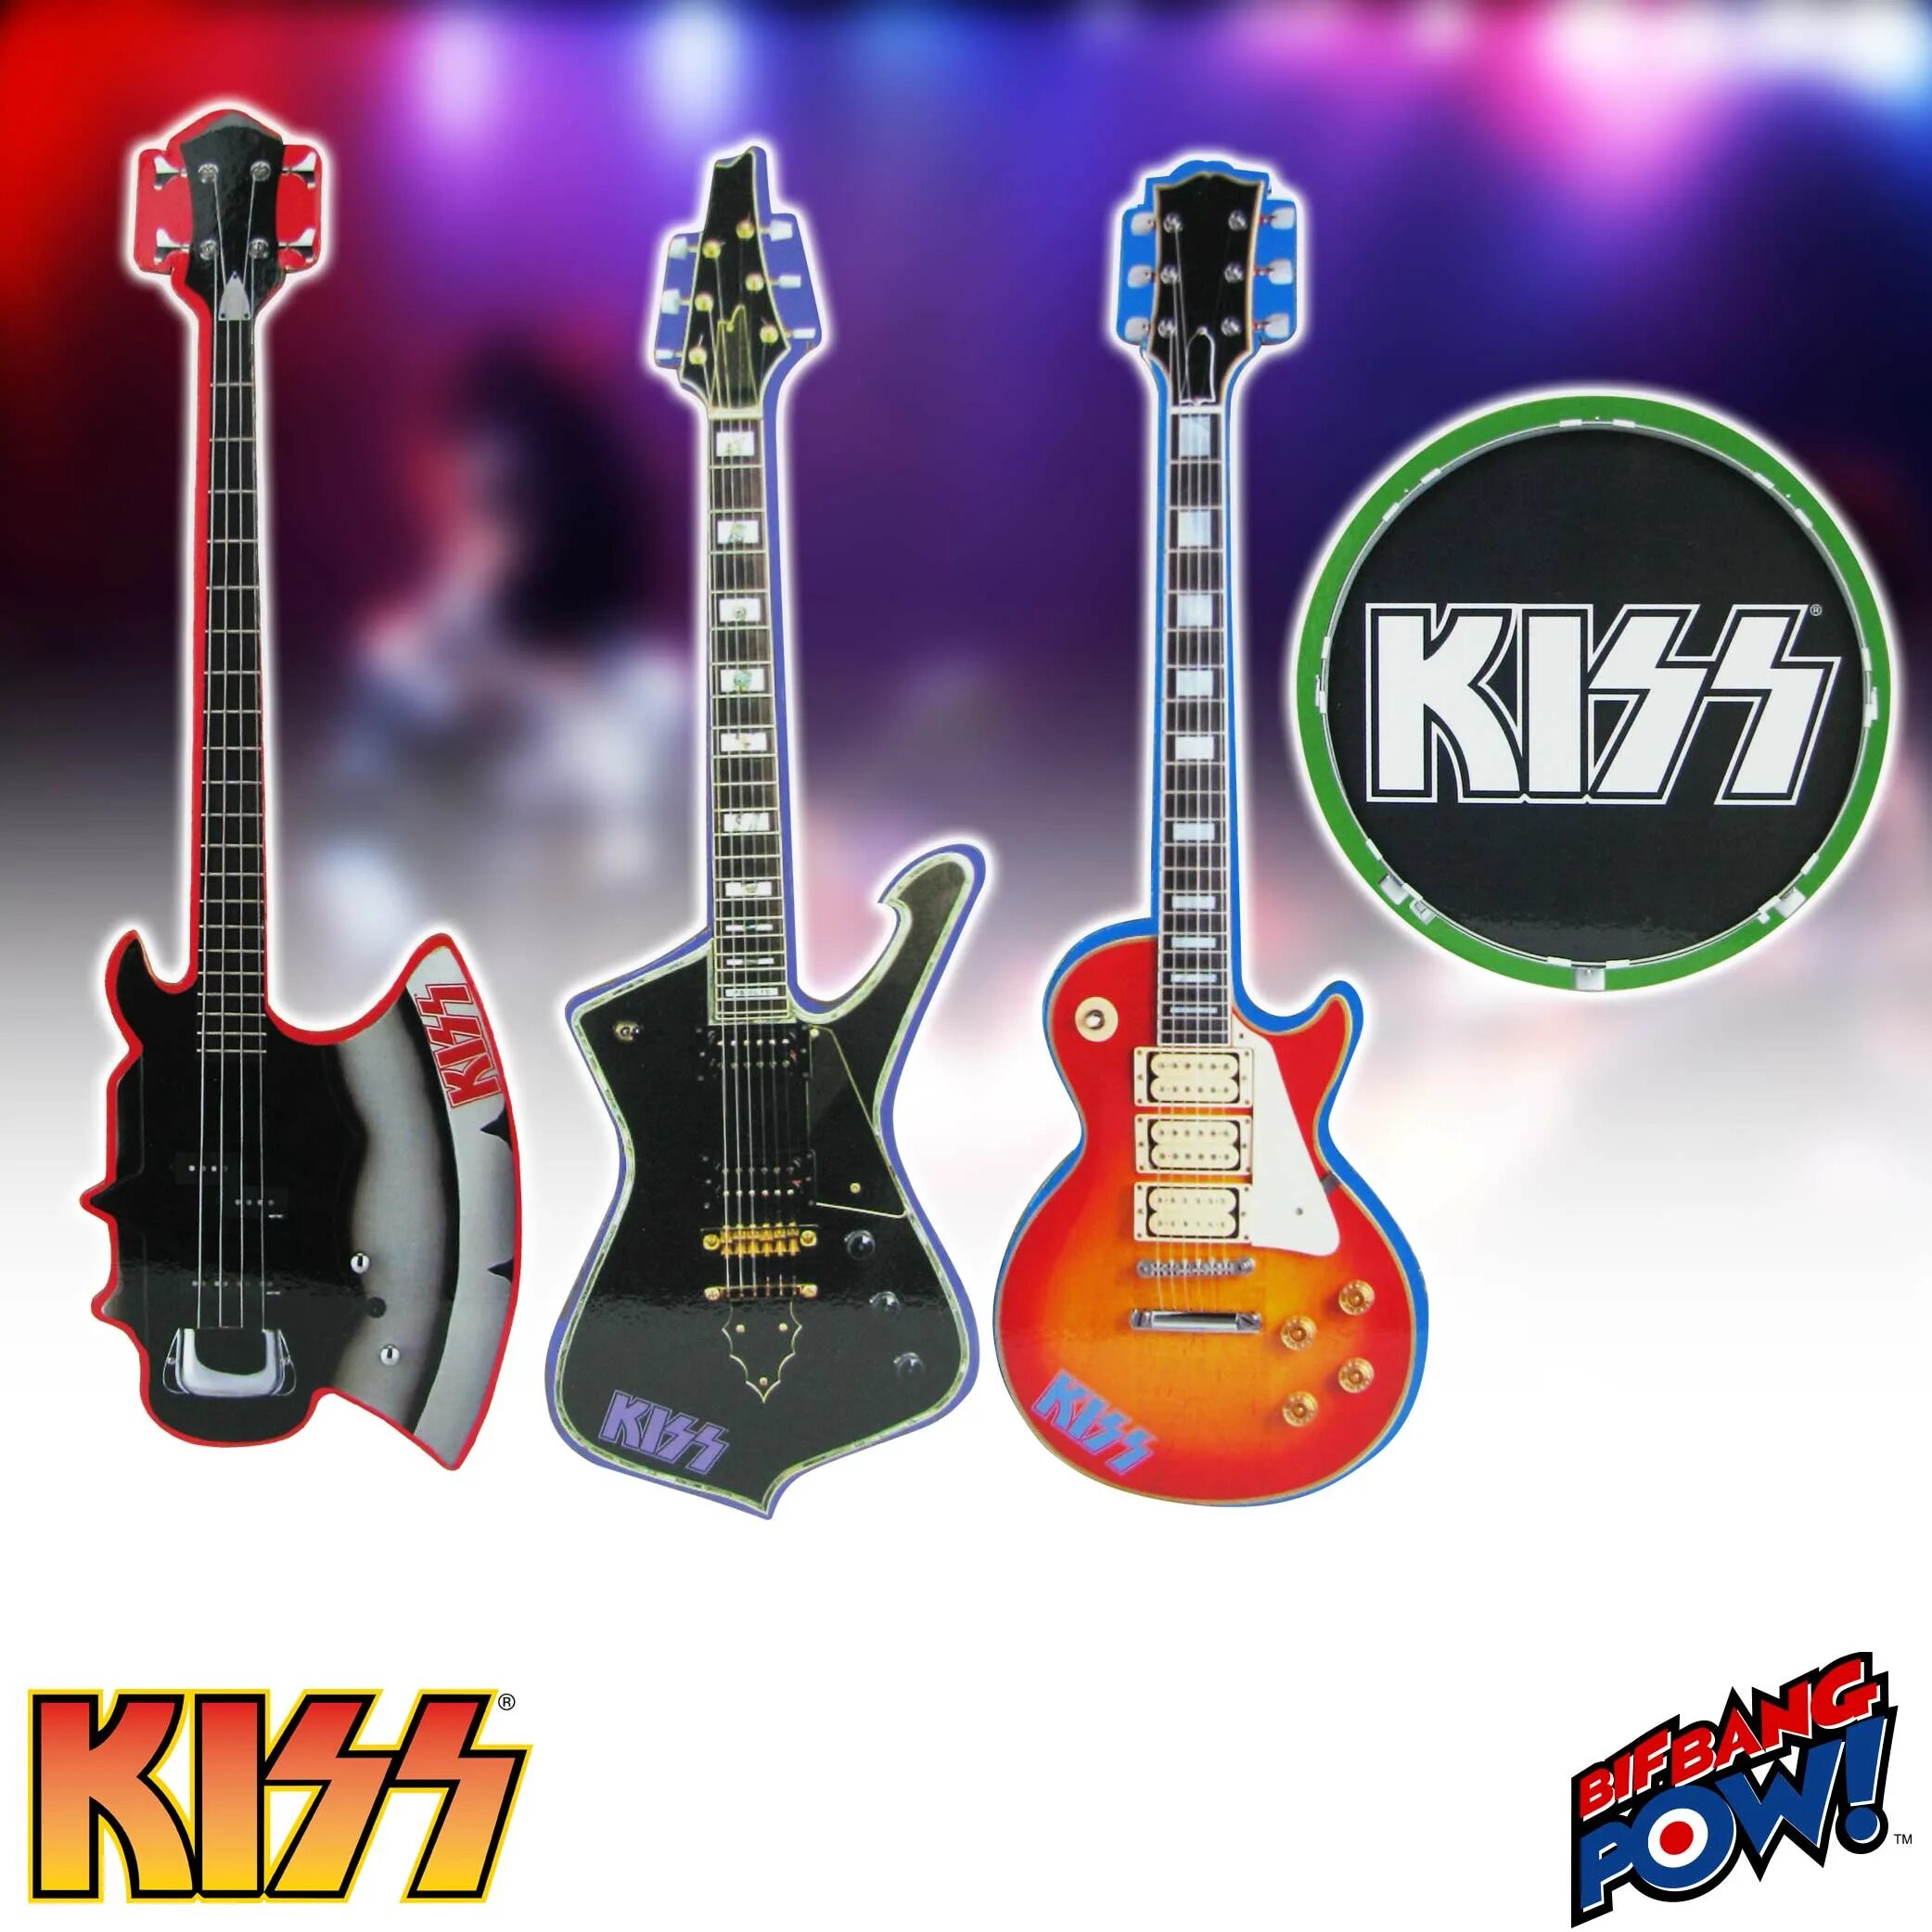 Гитары группы Kiss. Электрогитара Kiss. Электрогитар с названием группы. Бас гитара группы Кисс.